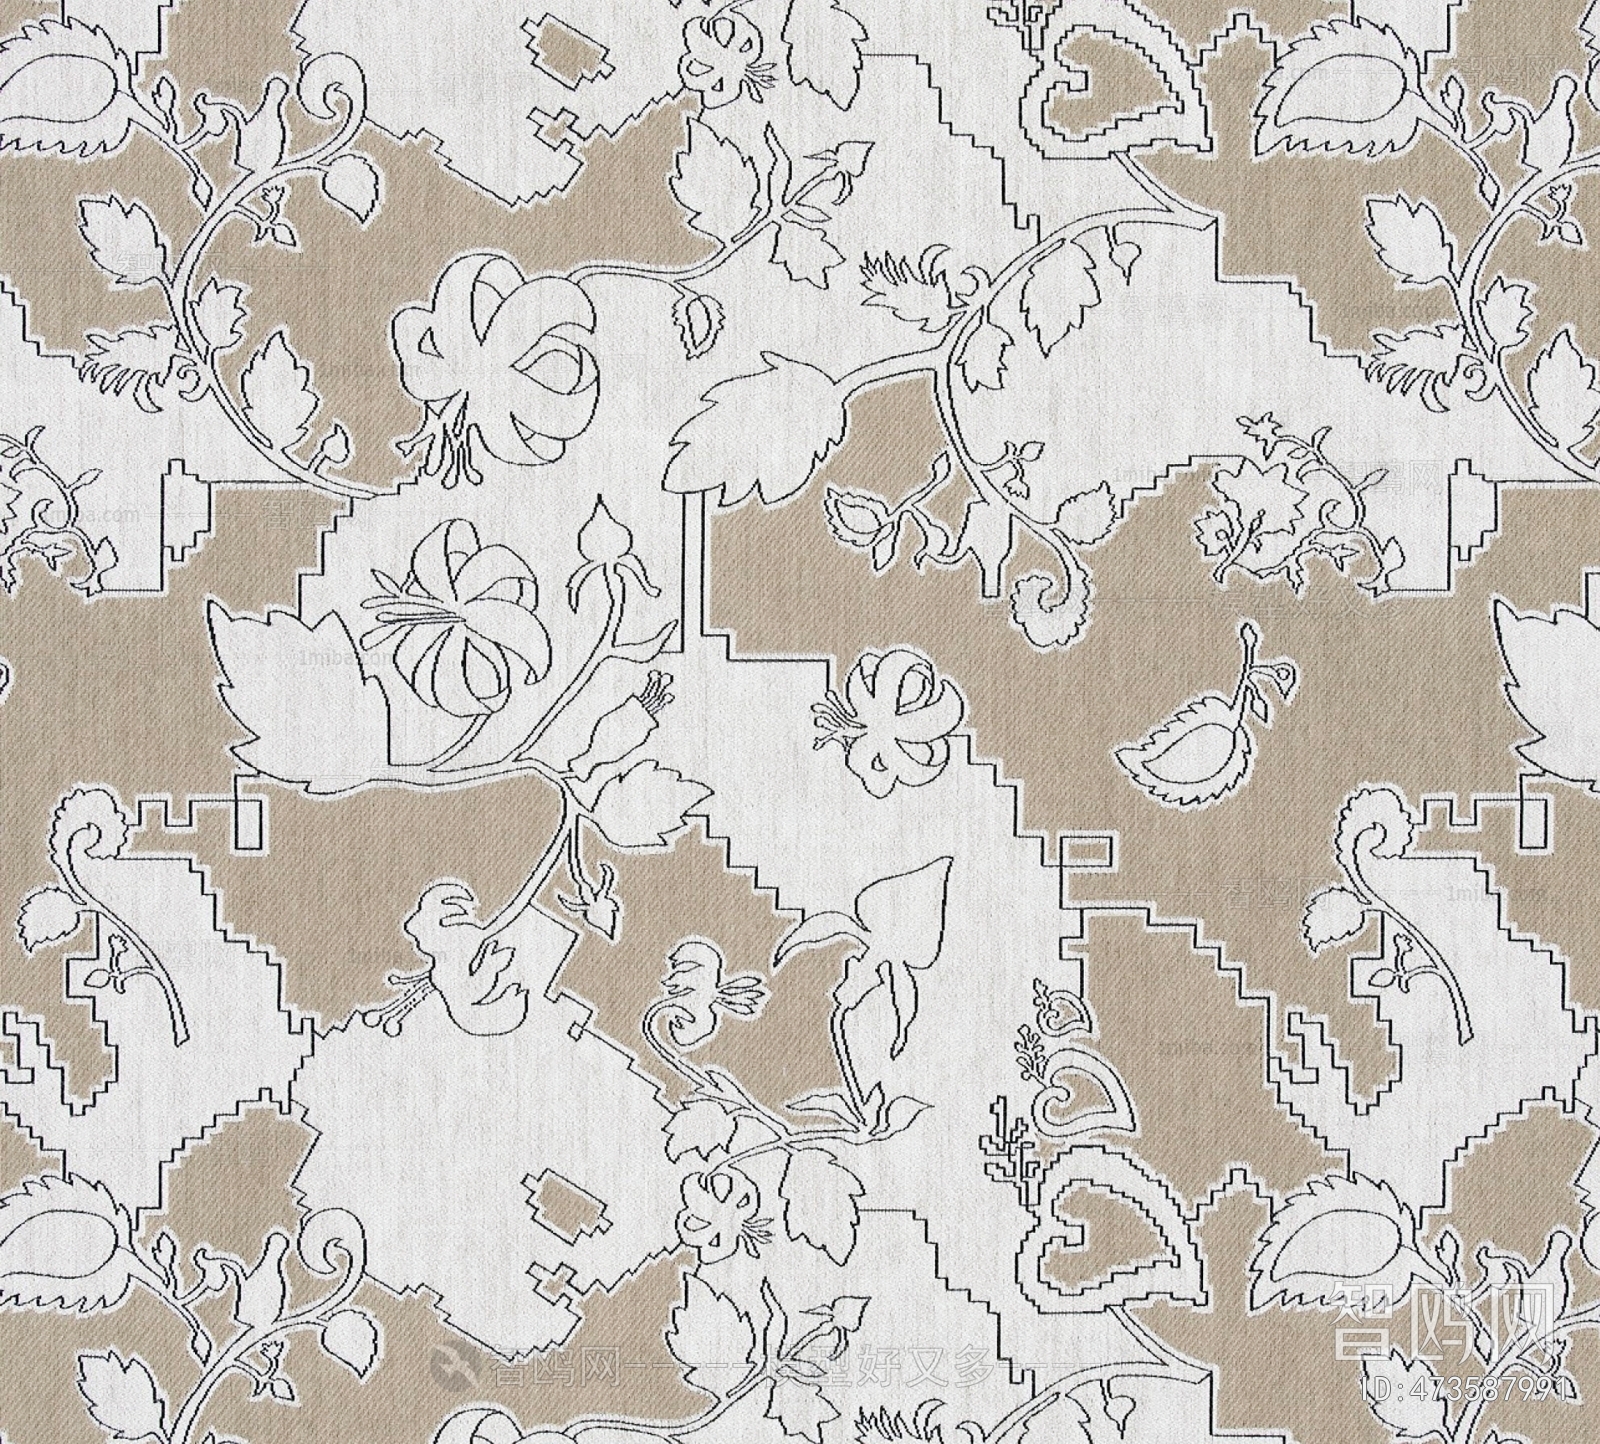 中式花纹毛毡布地毯